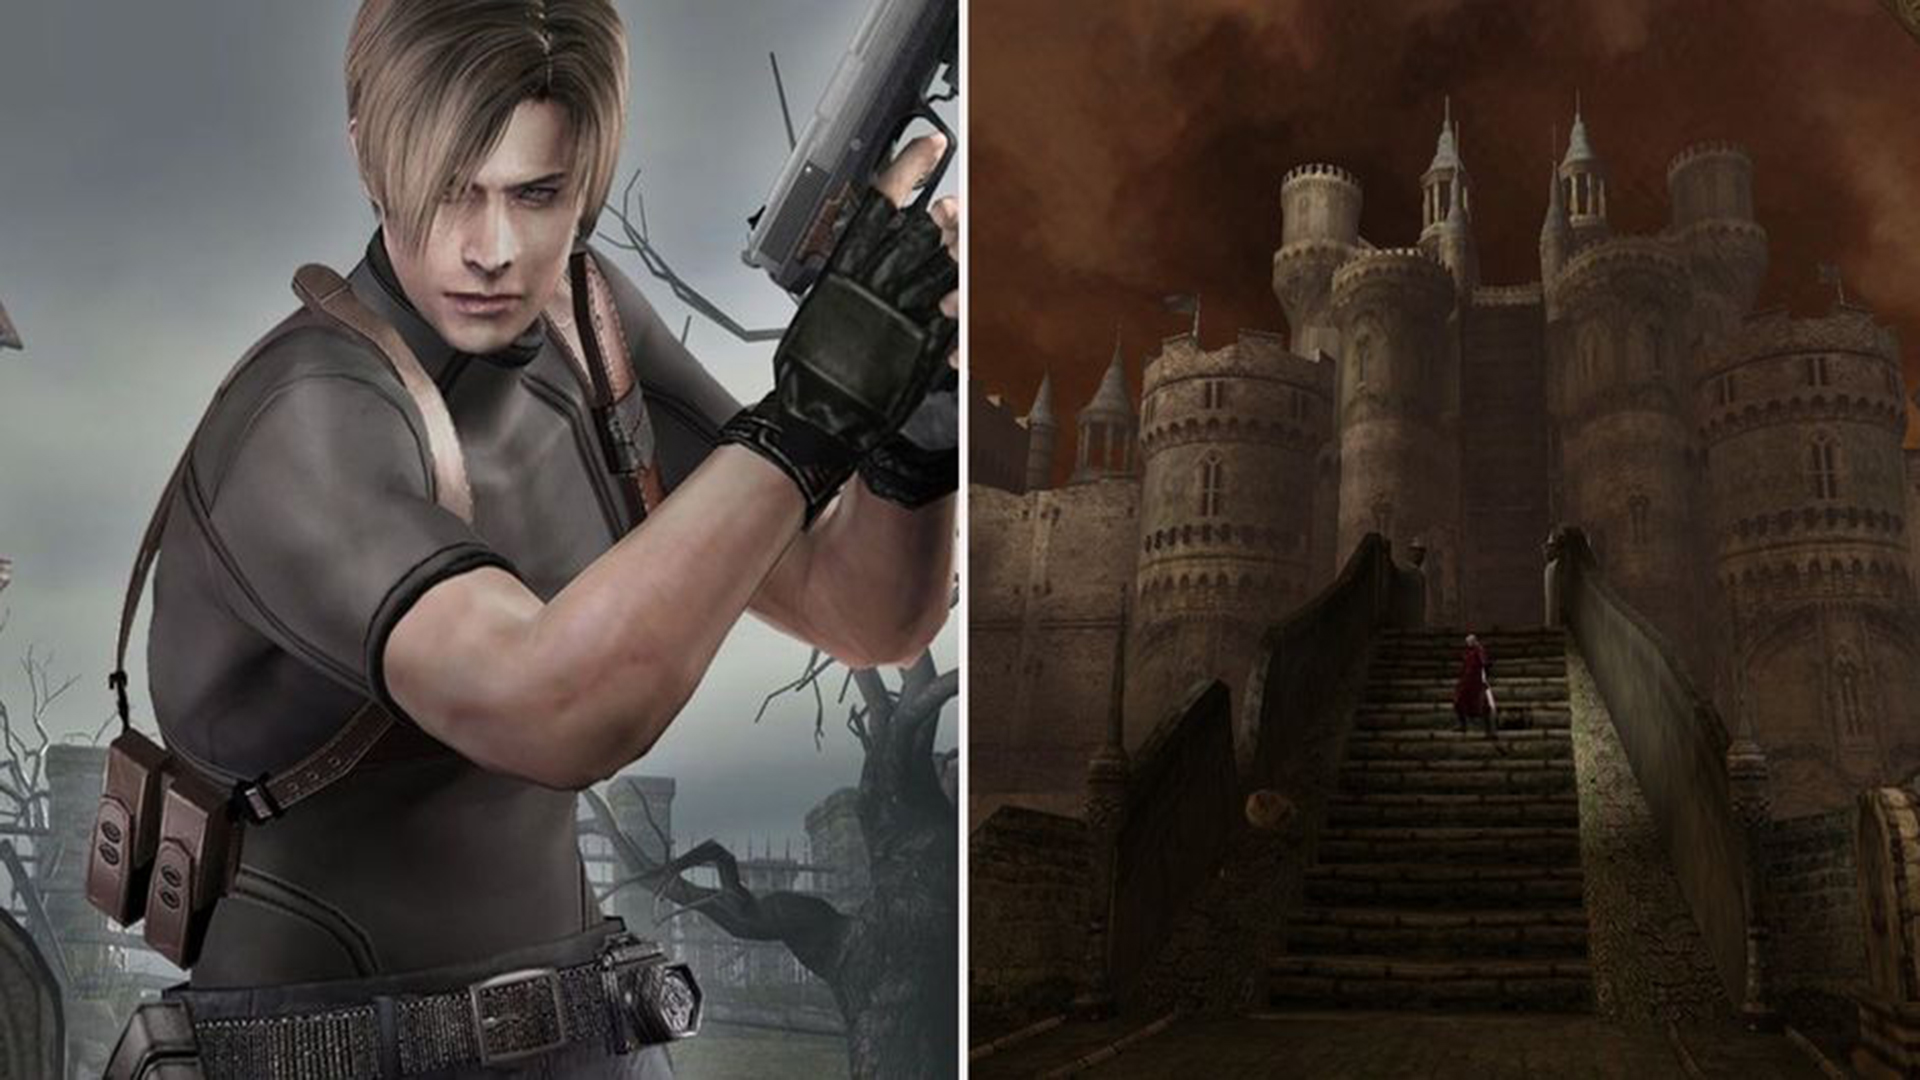 ۱۰ حقیقت درباره بازی Resident Evil که ساخته نشد